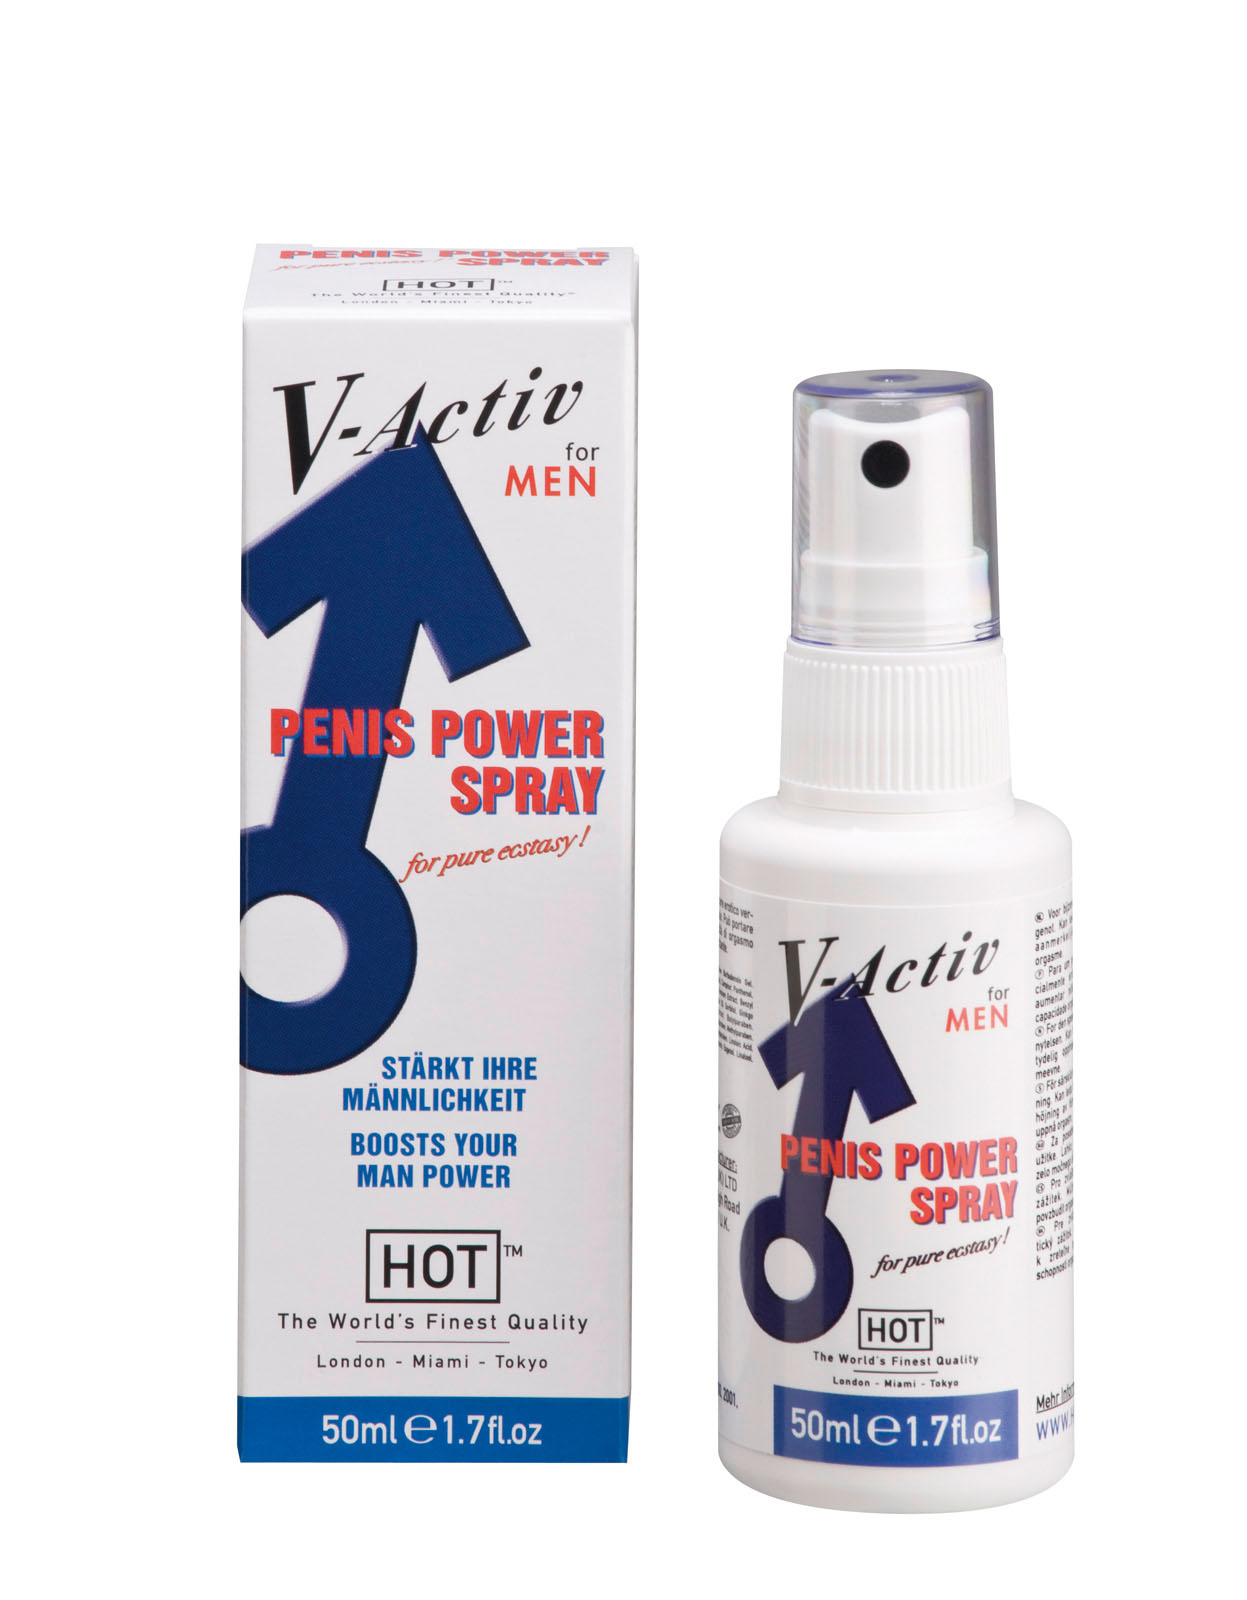 V-Activ Penis Power Spray for Men - 50ml